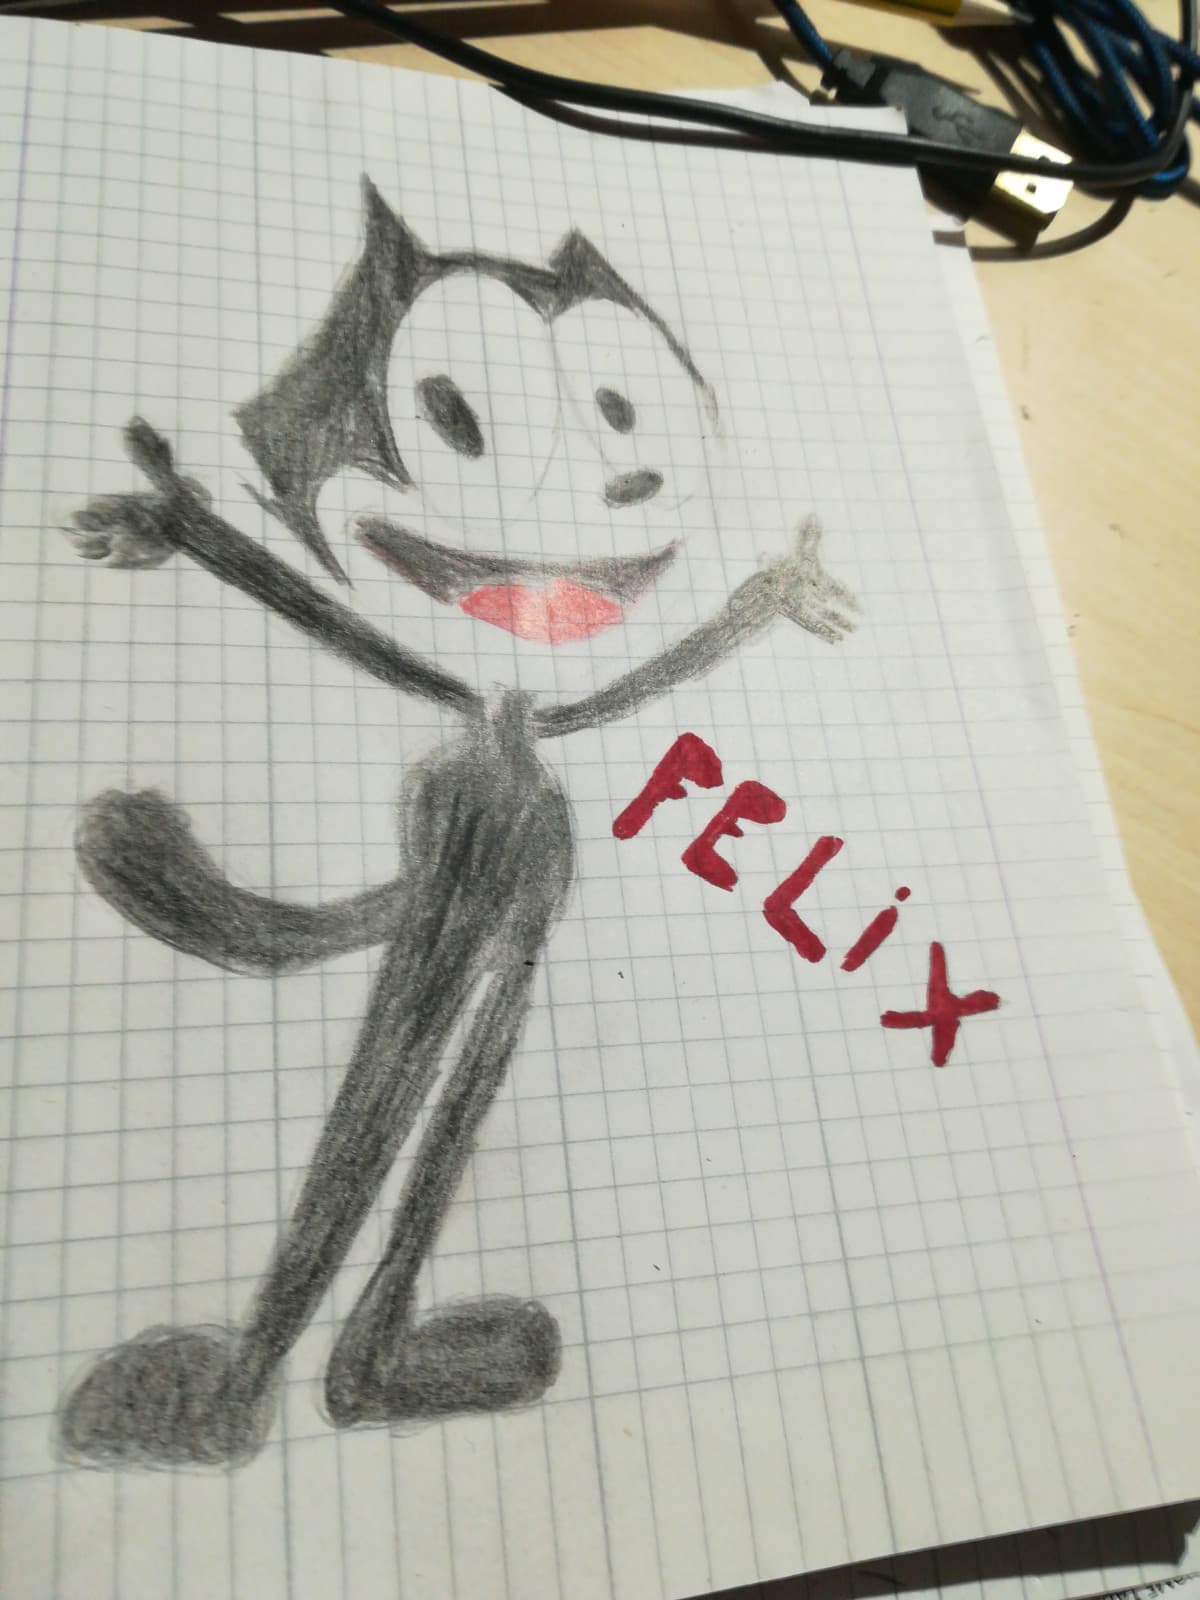 Felix the cat